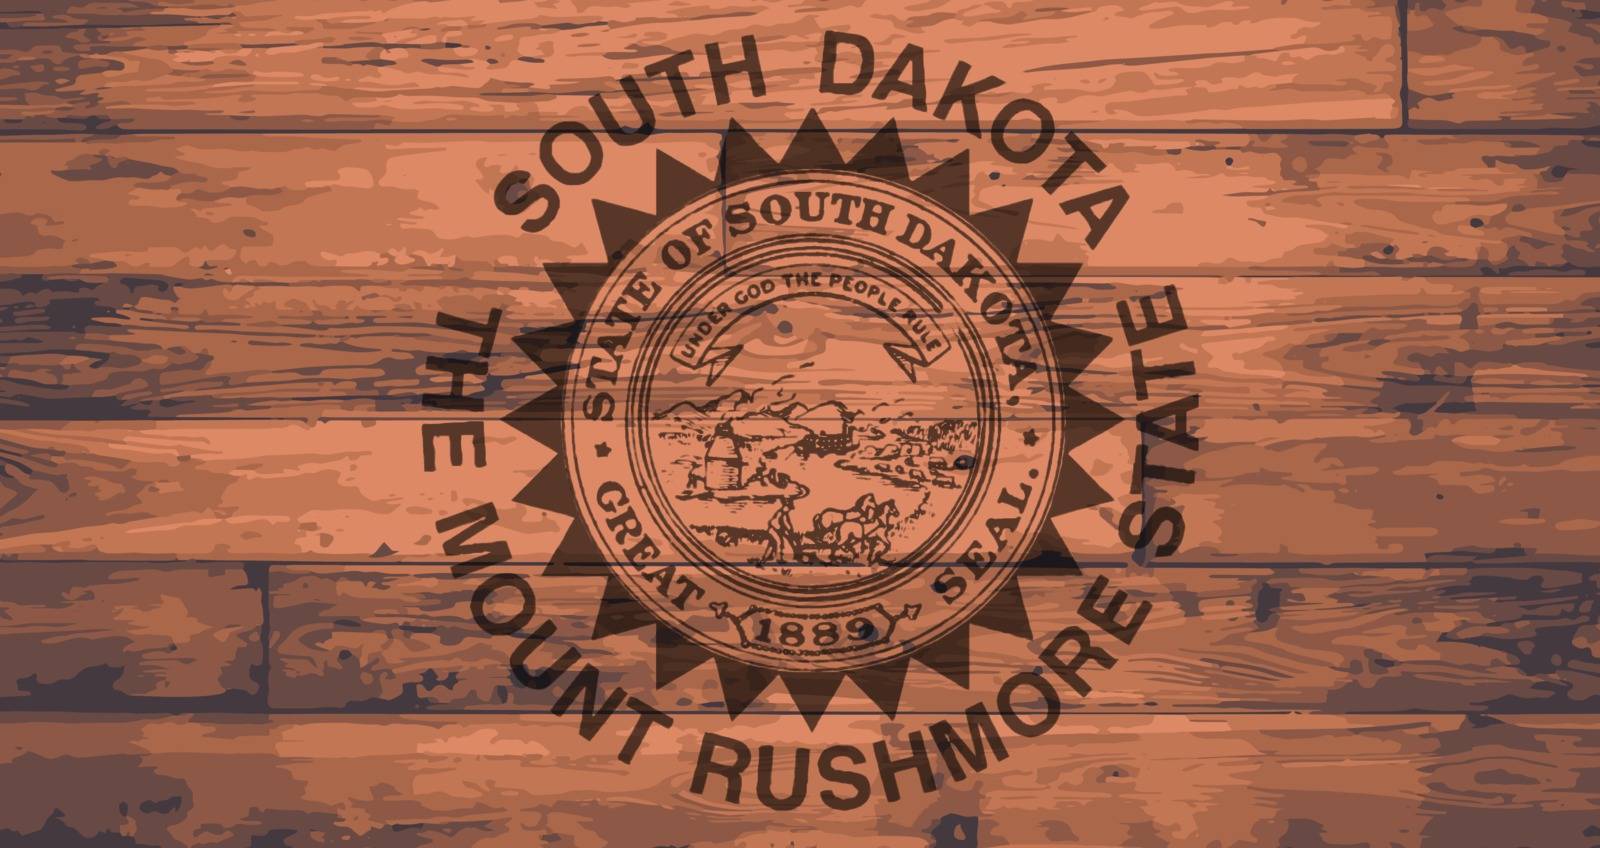 South Dakota State Flag branded onto wooden planks